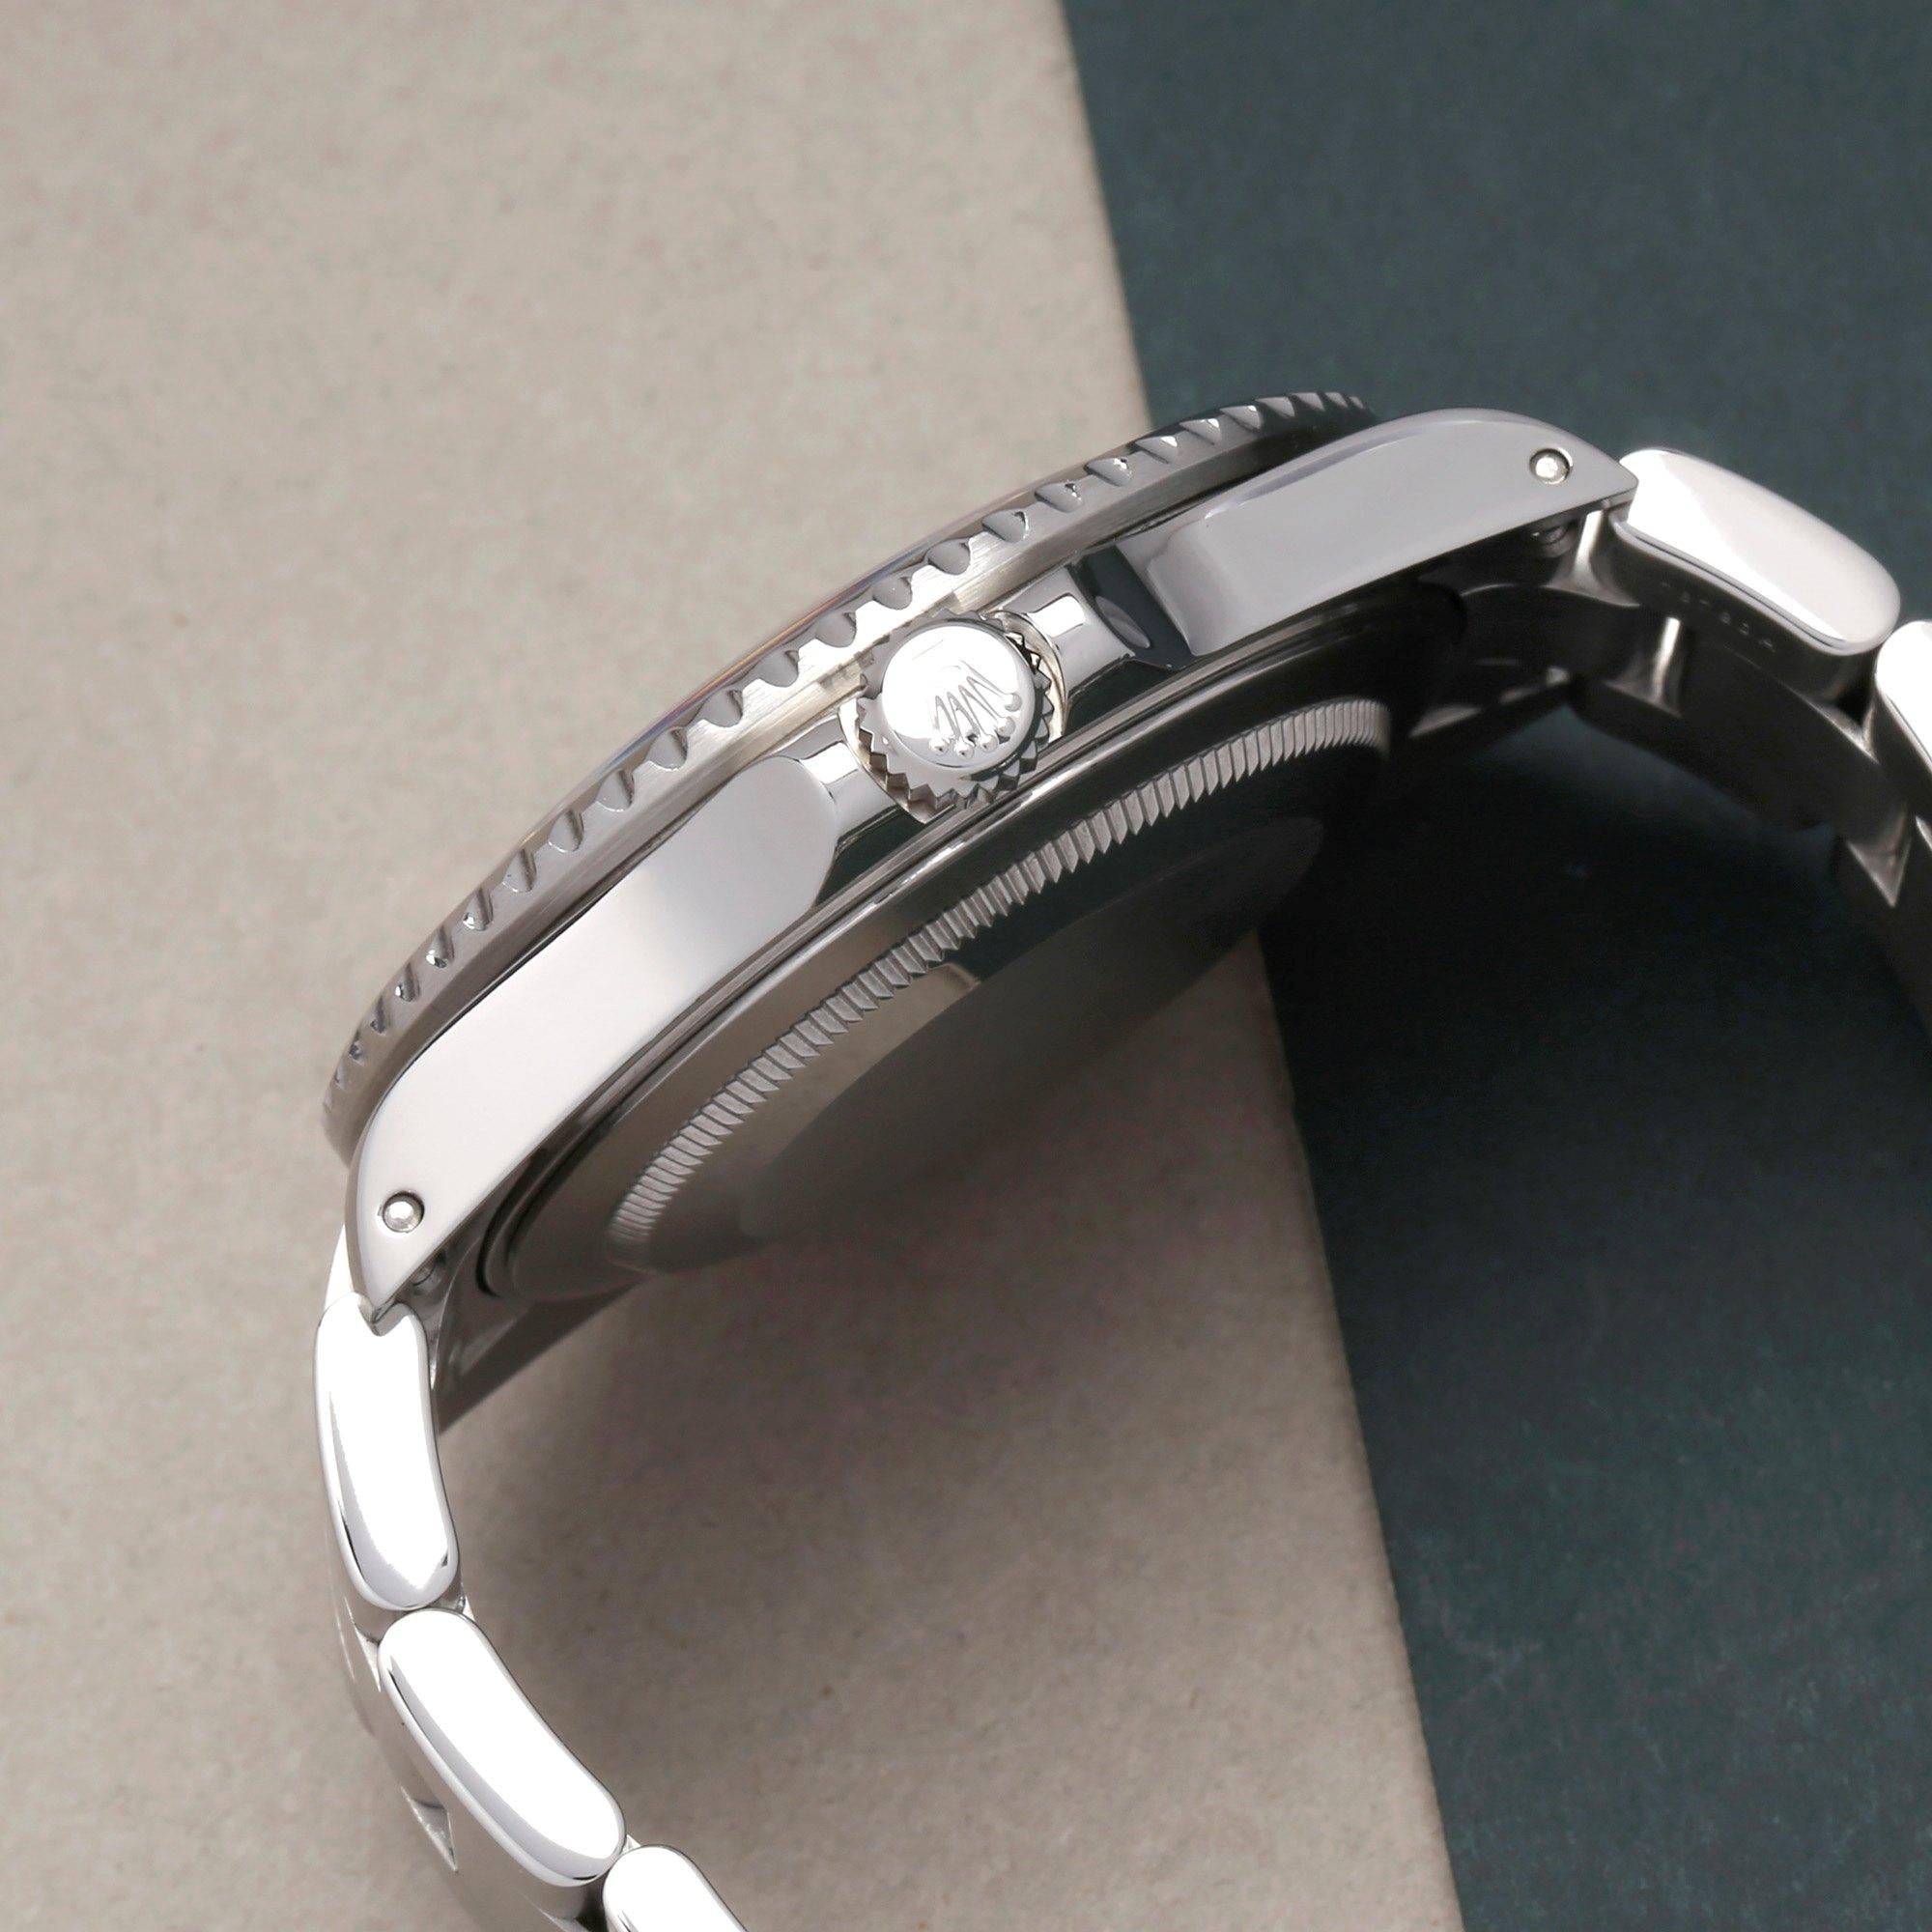 Rolex GMT-Master II 16710 Men's Stainless Steel Watch 1